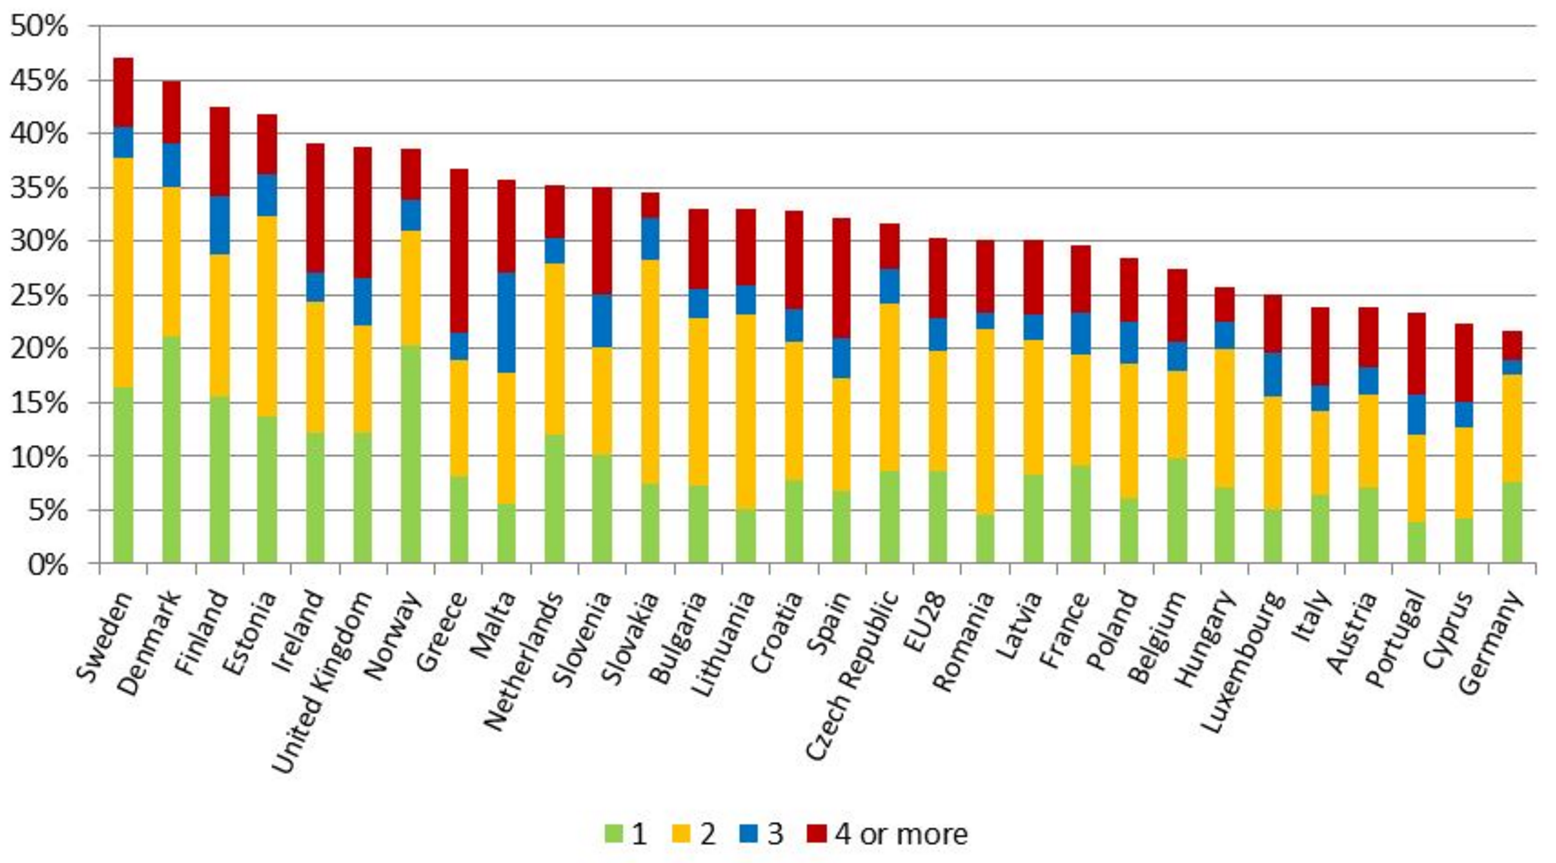 Andel arbeidstakere som jobber 1, 2, 3 eller 4 søndager i løpet av en måned – EU28-landene og Norge, 2015